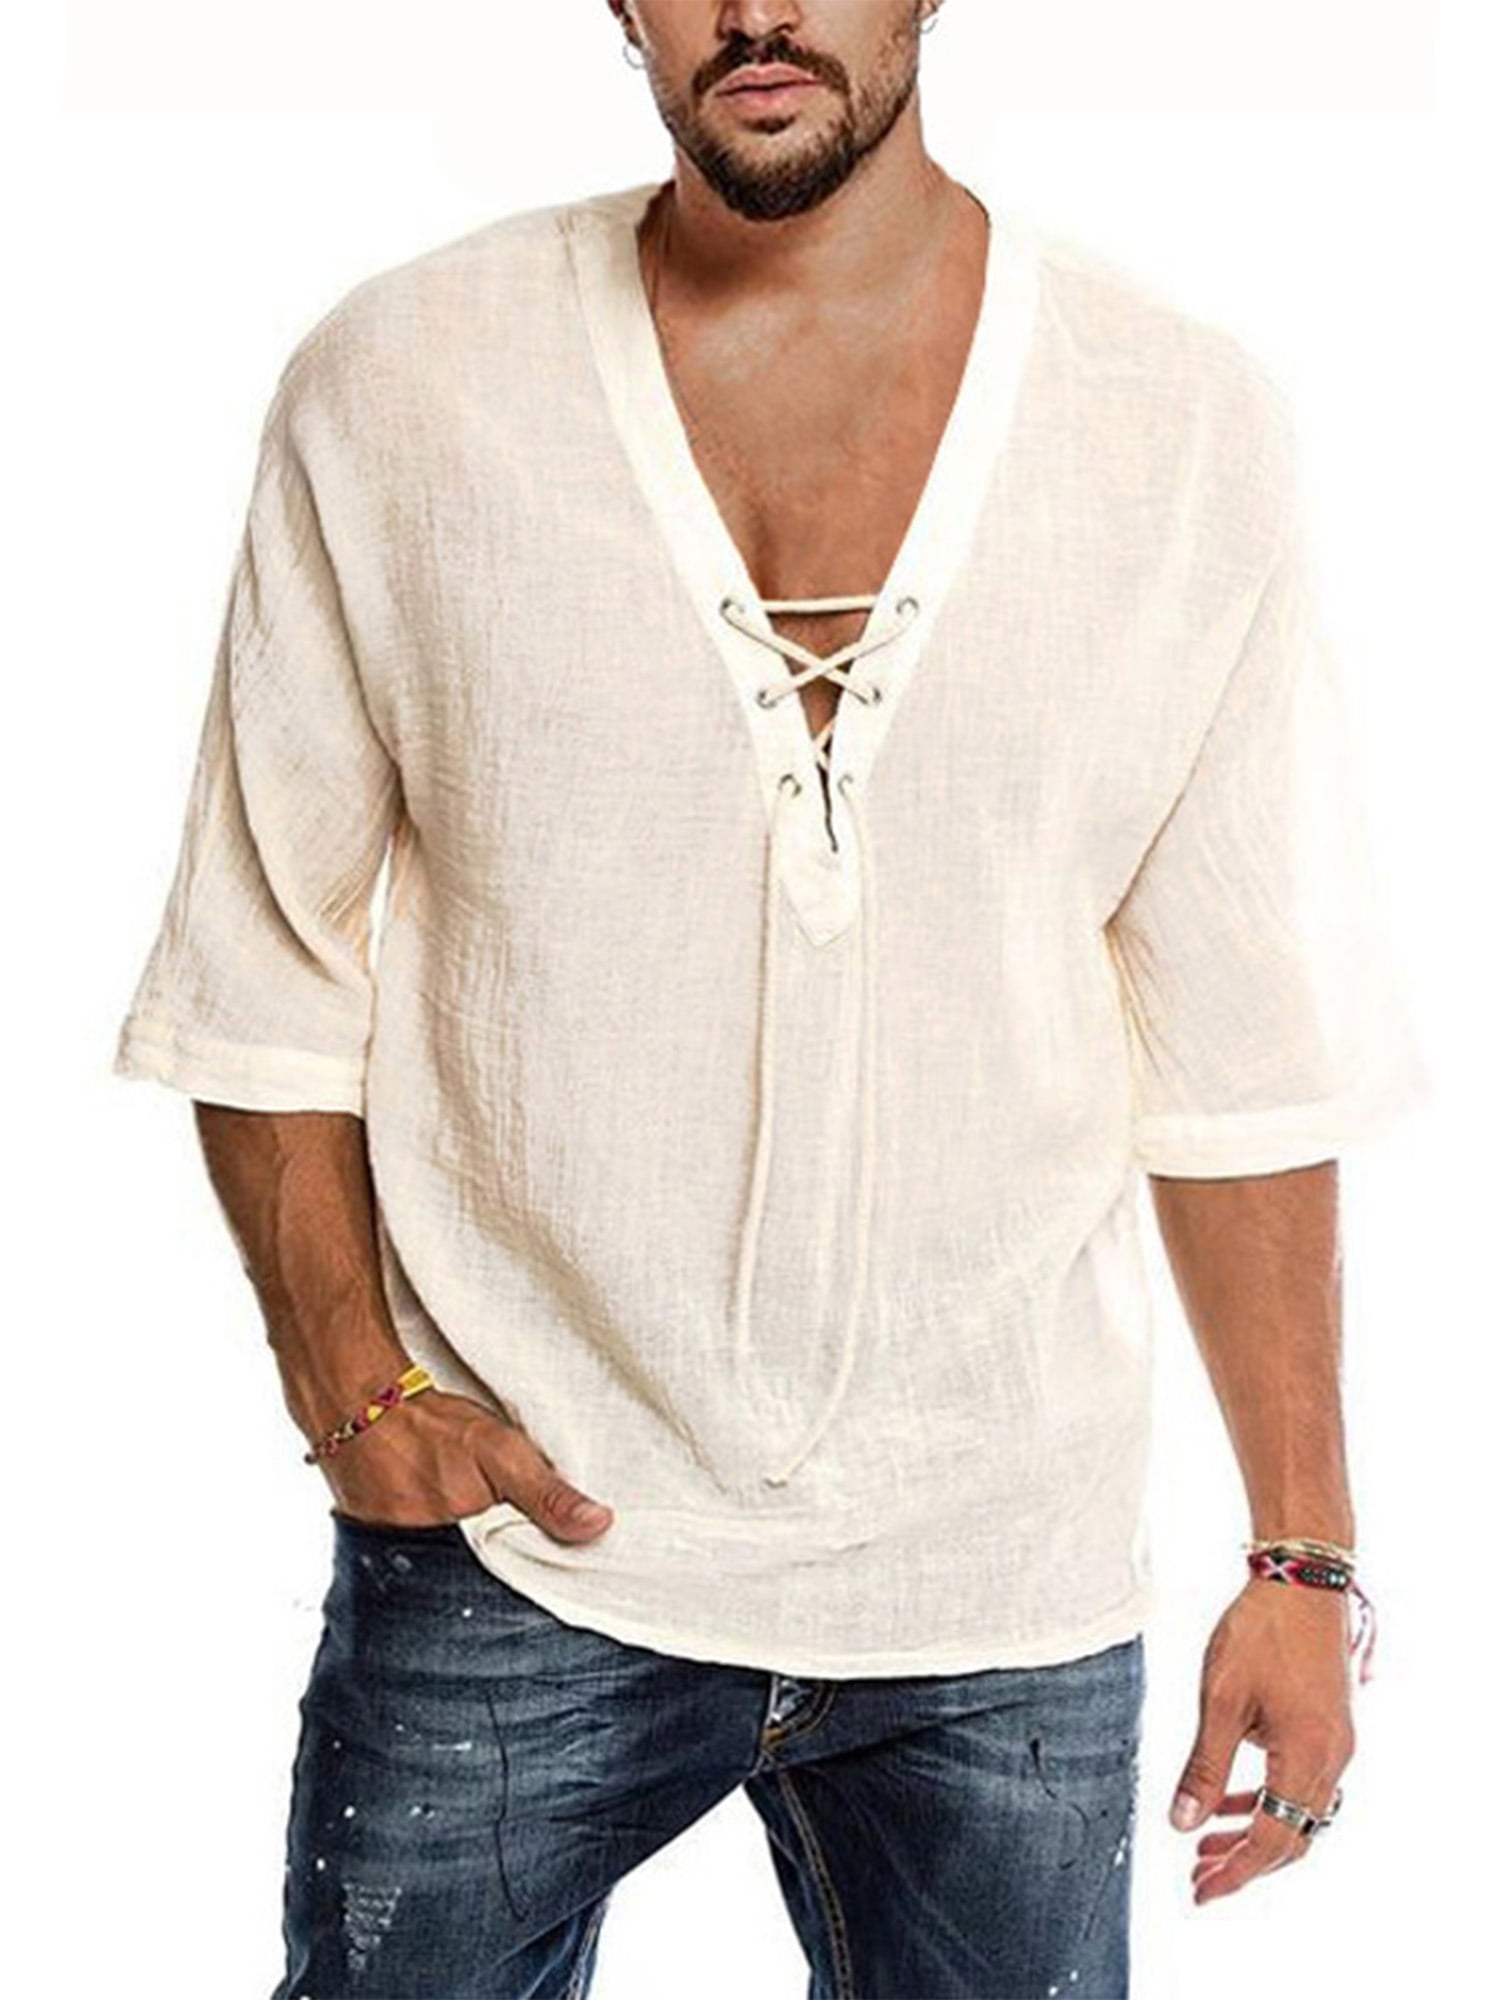 Paille - Paille Mens Linen Cotton T Shirt Casual 3/4 Sleeve Beach ...